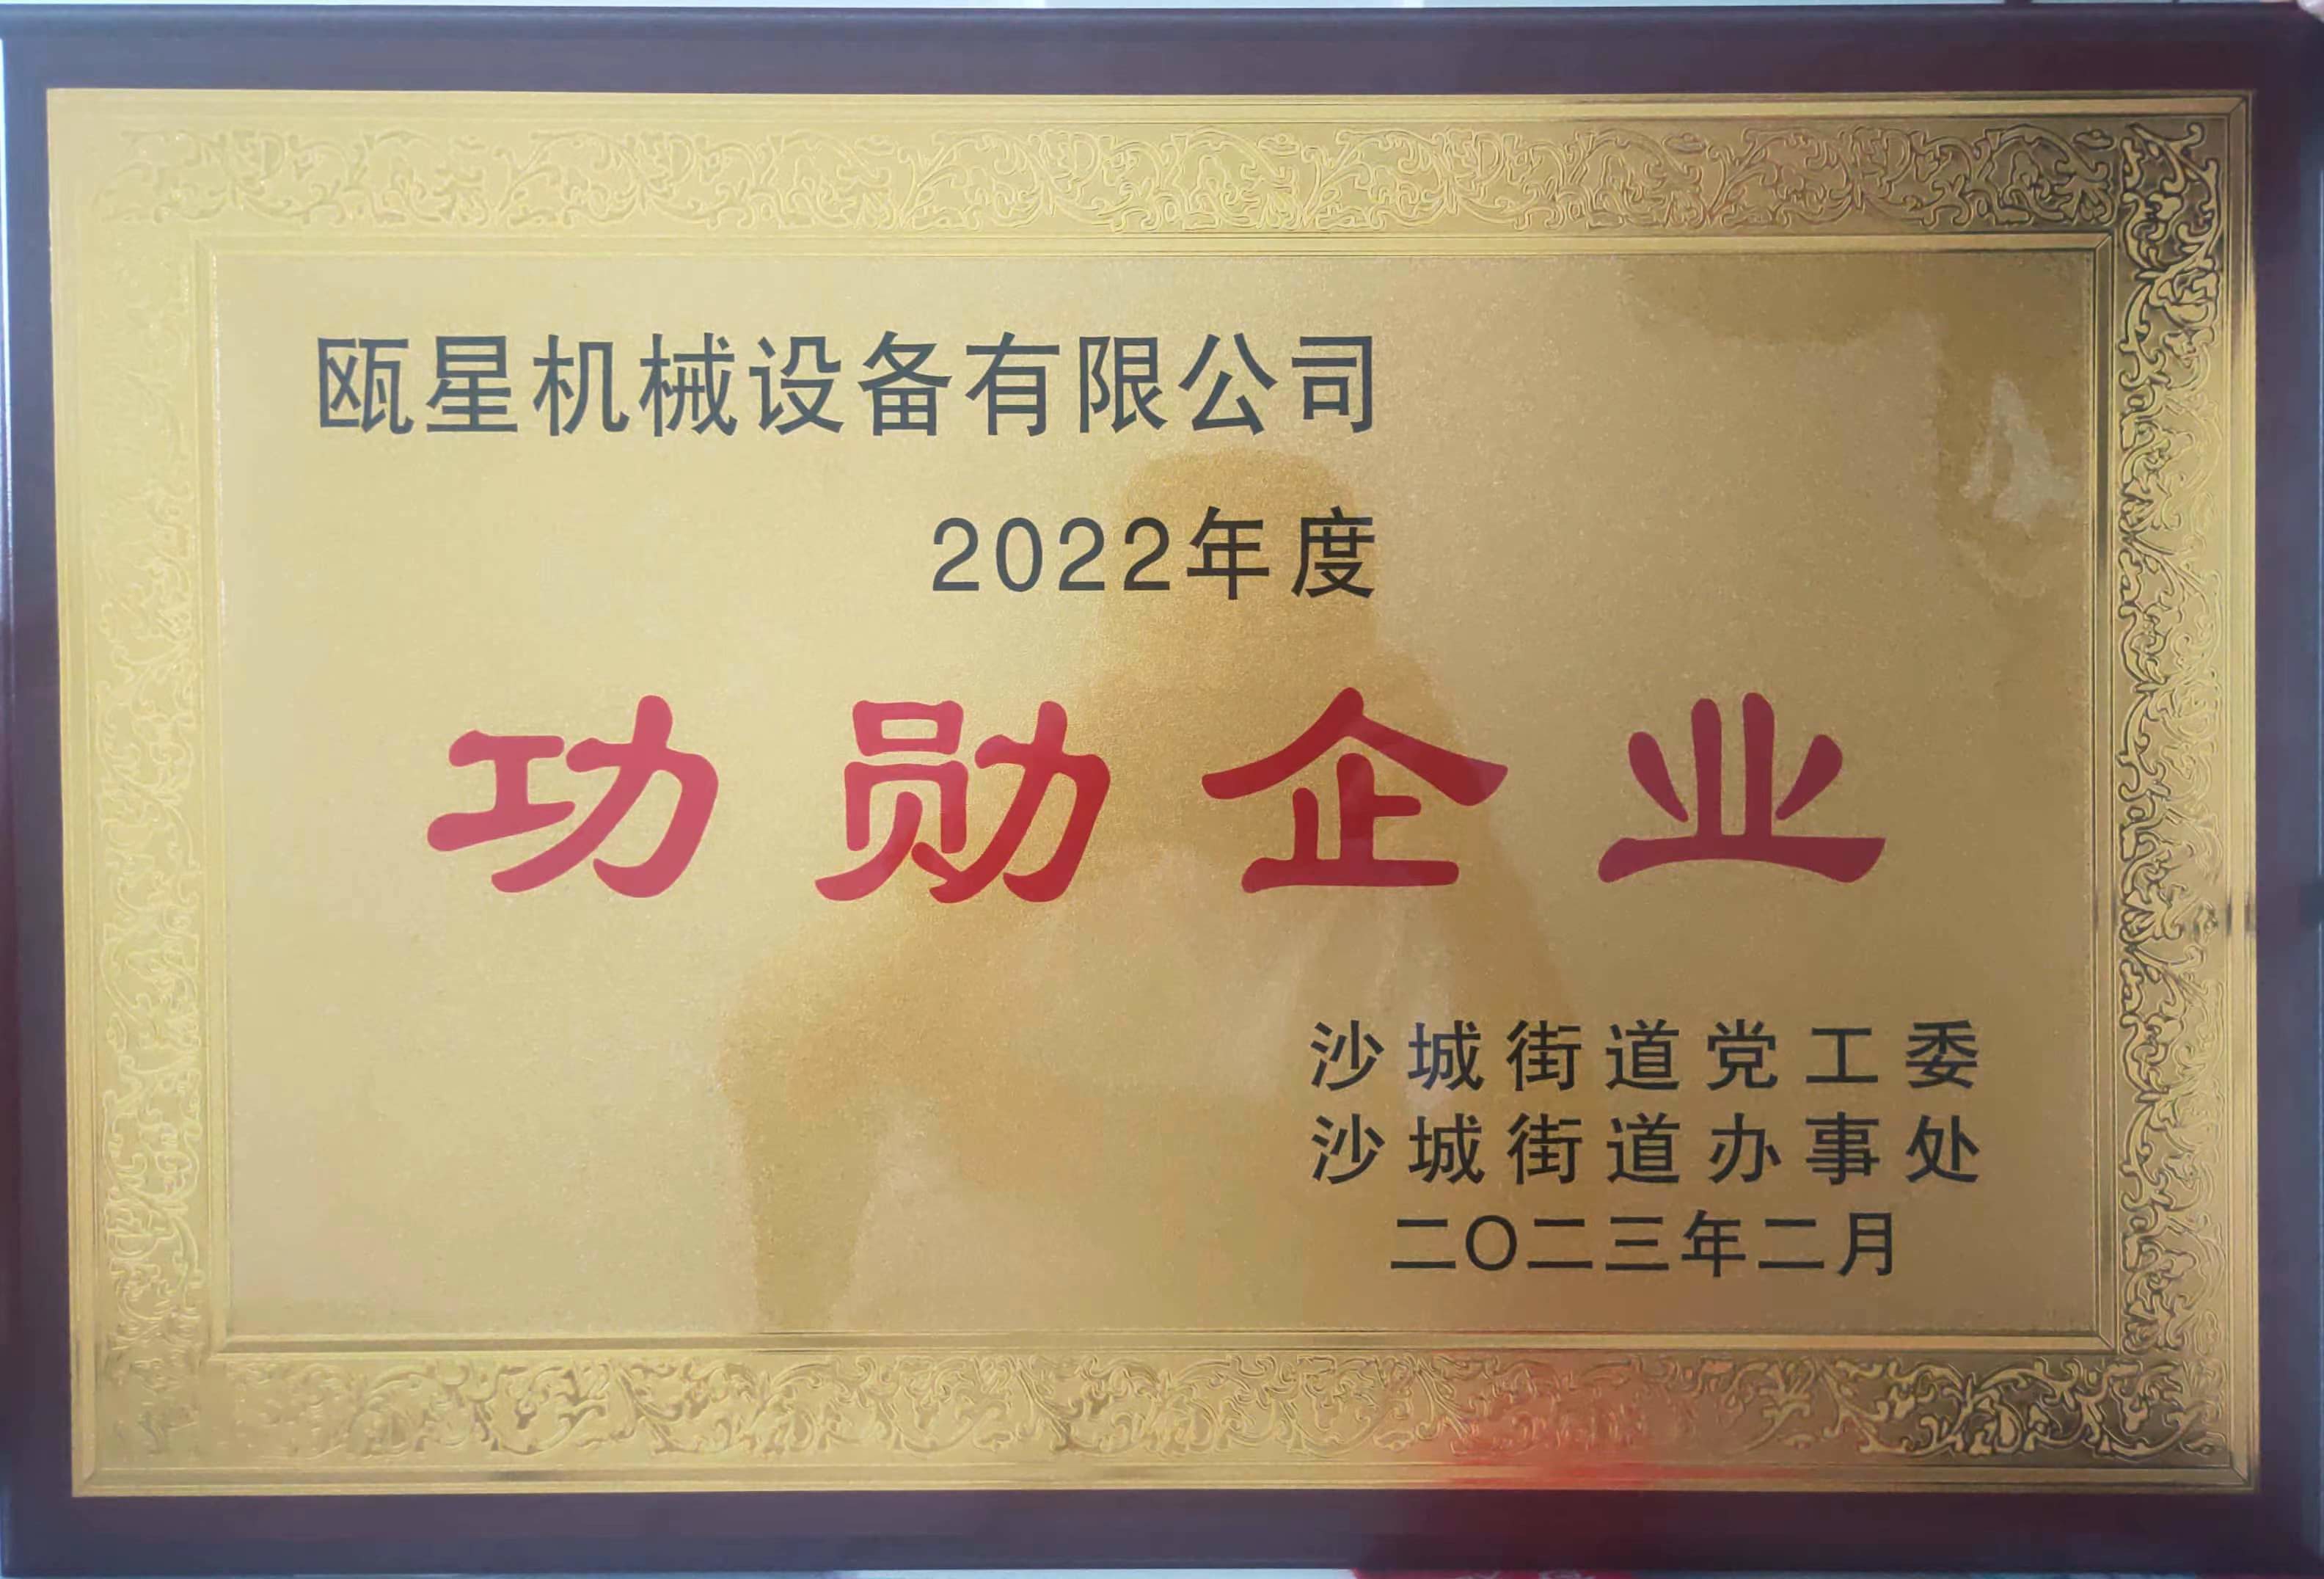 荣获“2022年度功勋企业”称号